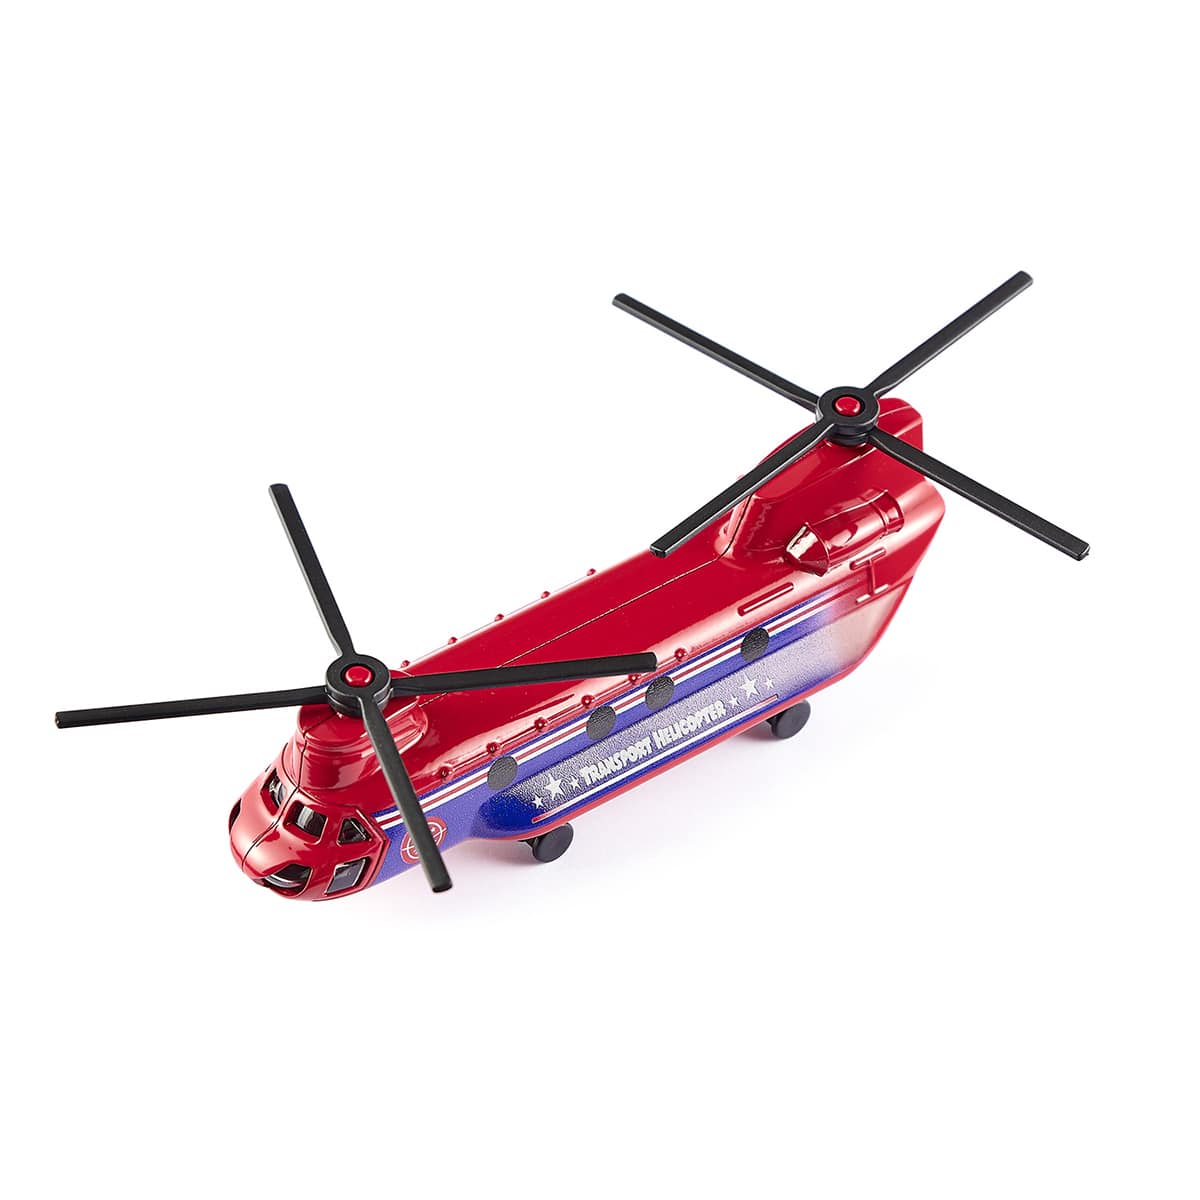 輸送用ヘリコプター (ジク・SIKU)